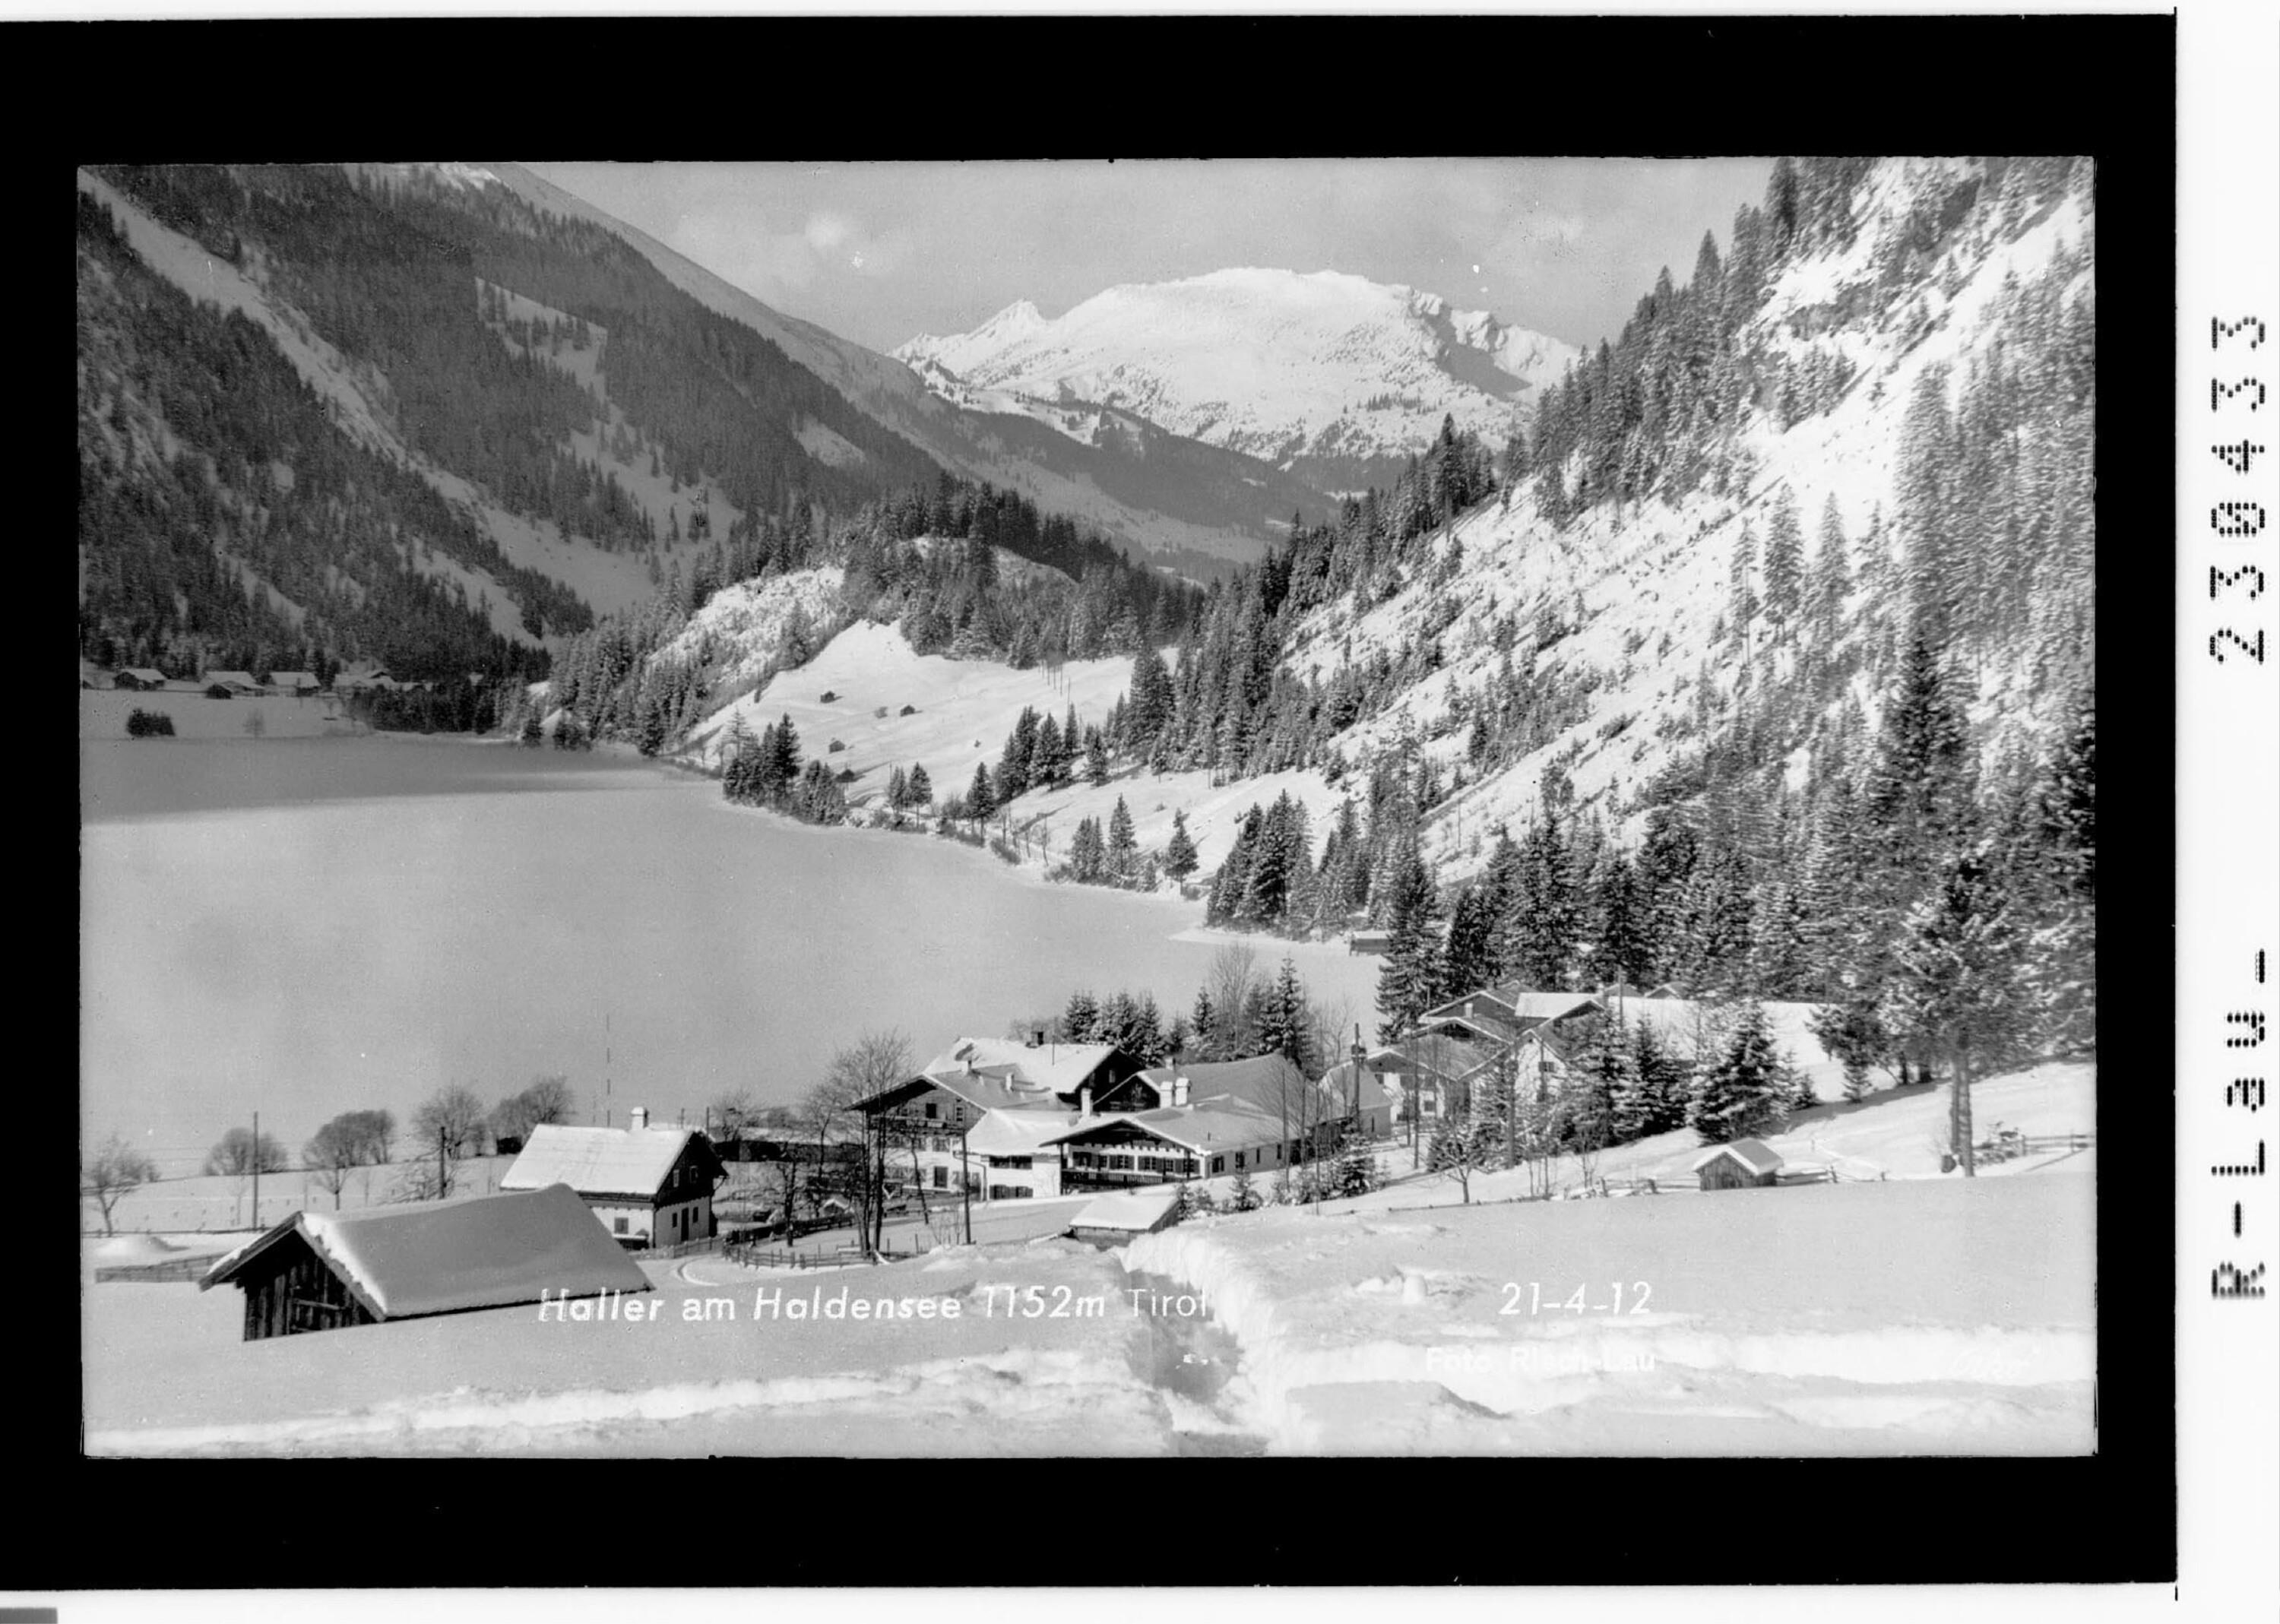 Winter in Haller am Haldensee 1152 m / Tirol></div>


    <hr>
    <div class=